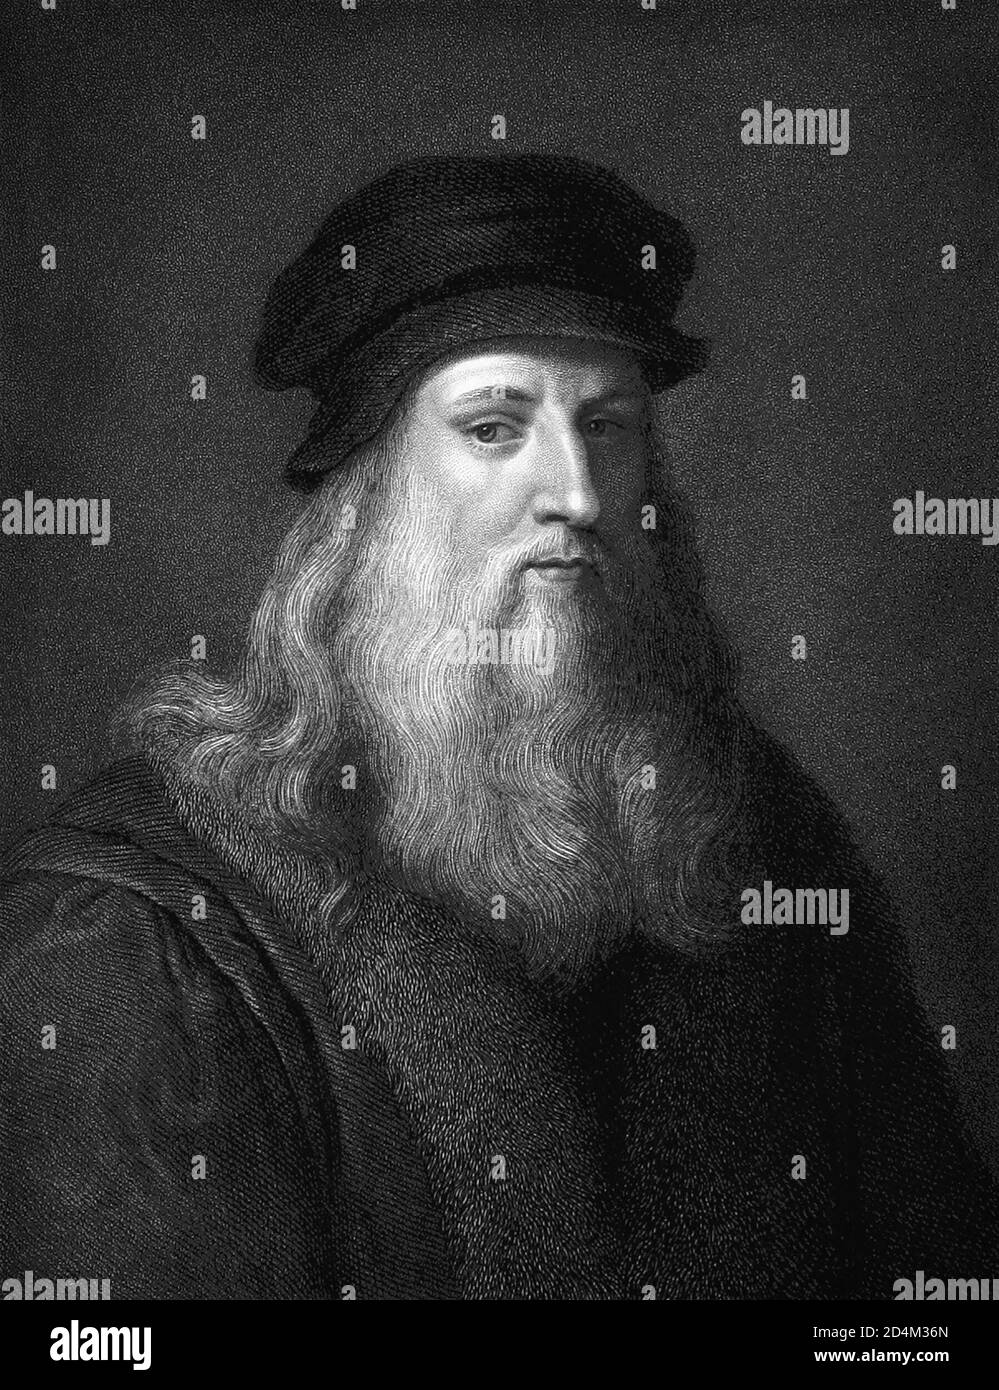 Leonardo da Vinci (1452-1519), polimath italiano dell'Alto Rinascimento, è ampiamente considerato uno dei più grandi pittori di tutti i tempi. Foto Stock